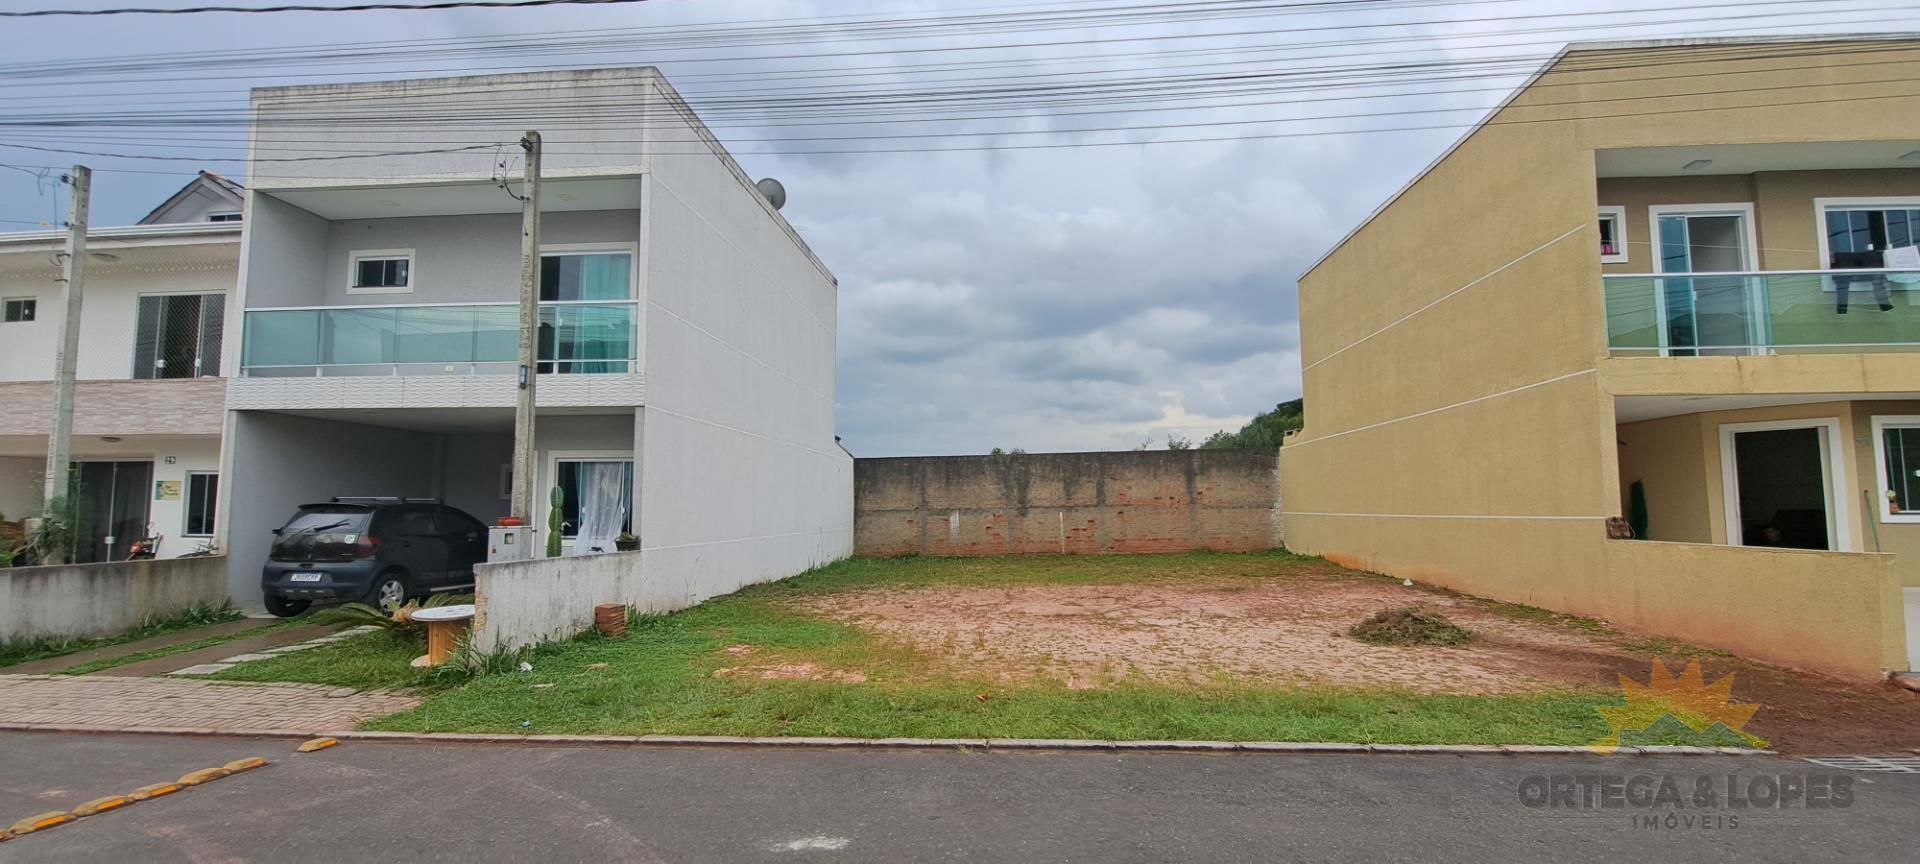 Terreno para venda no Tatuquara em Curitiba com 90m² por R$ 140000